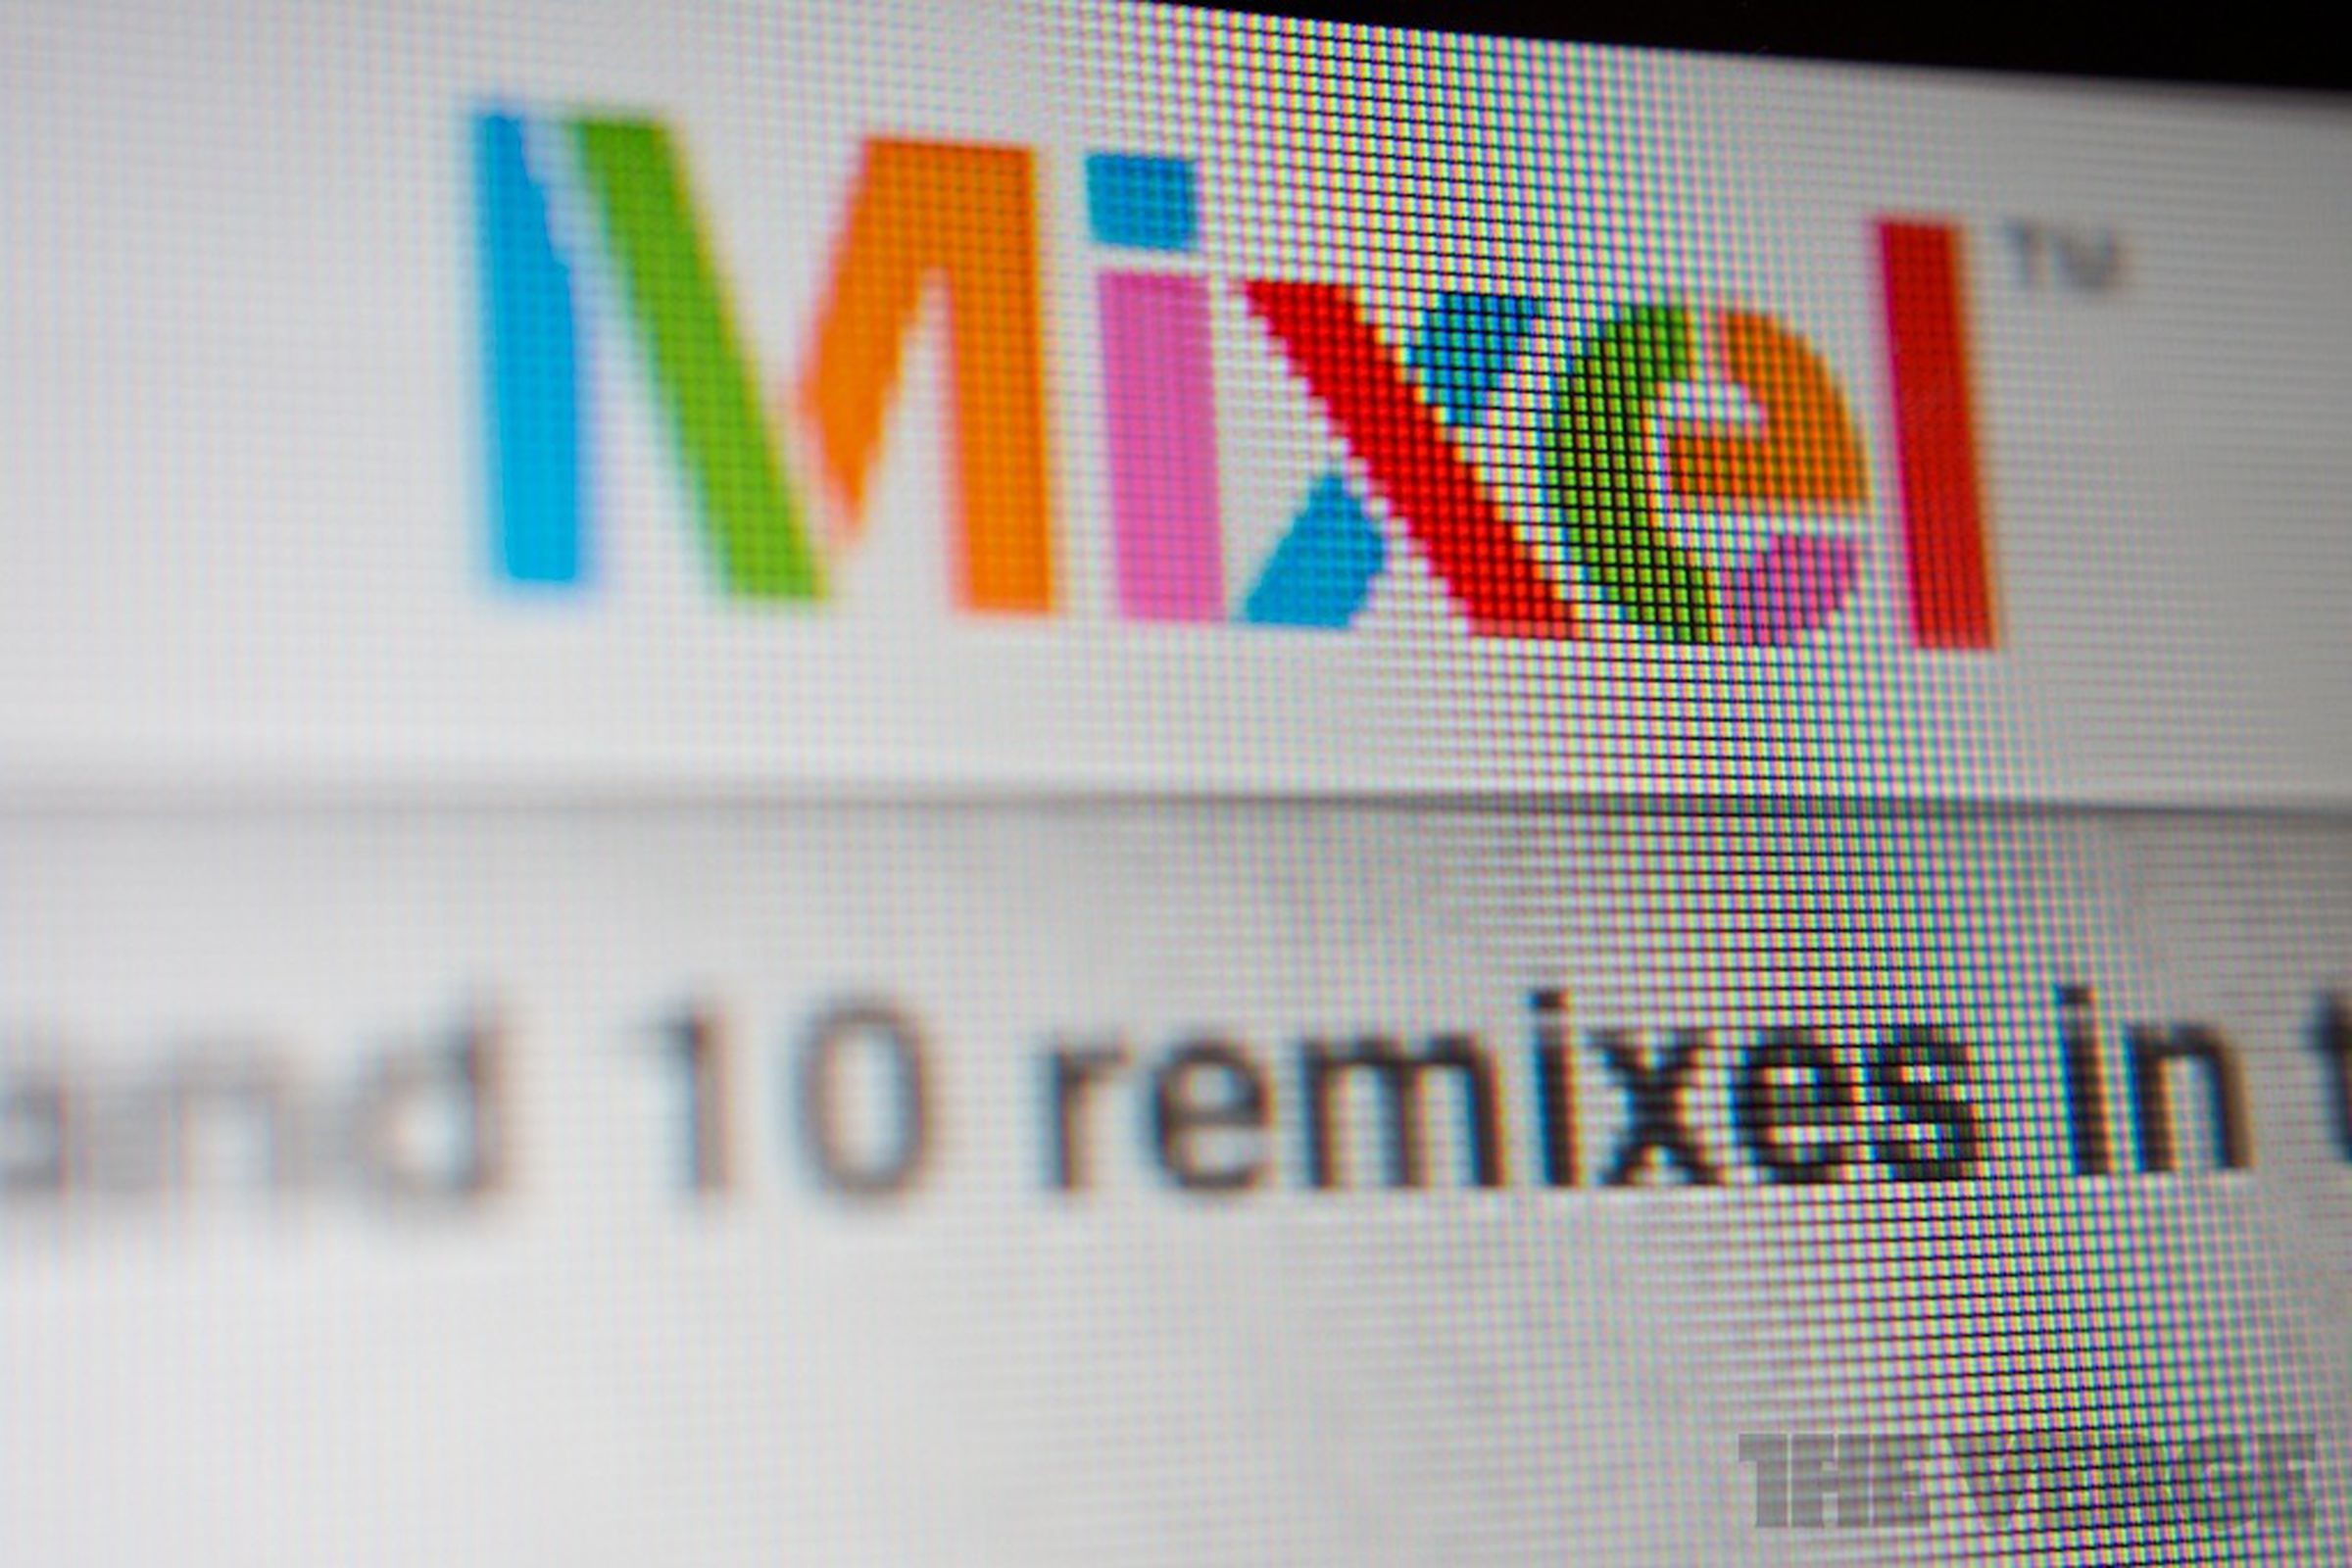 Mixel logo close-up